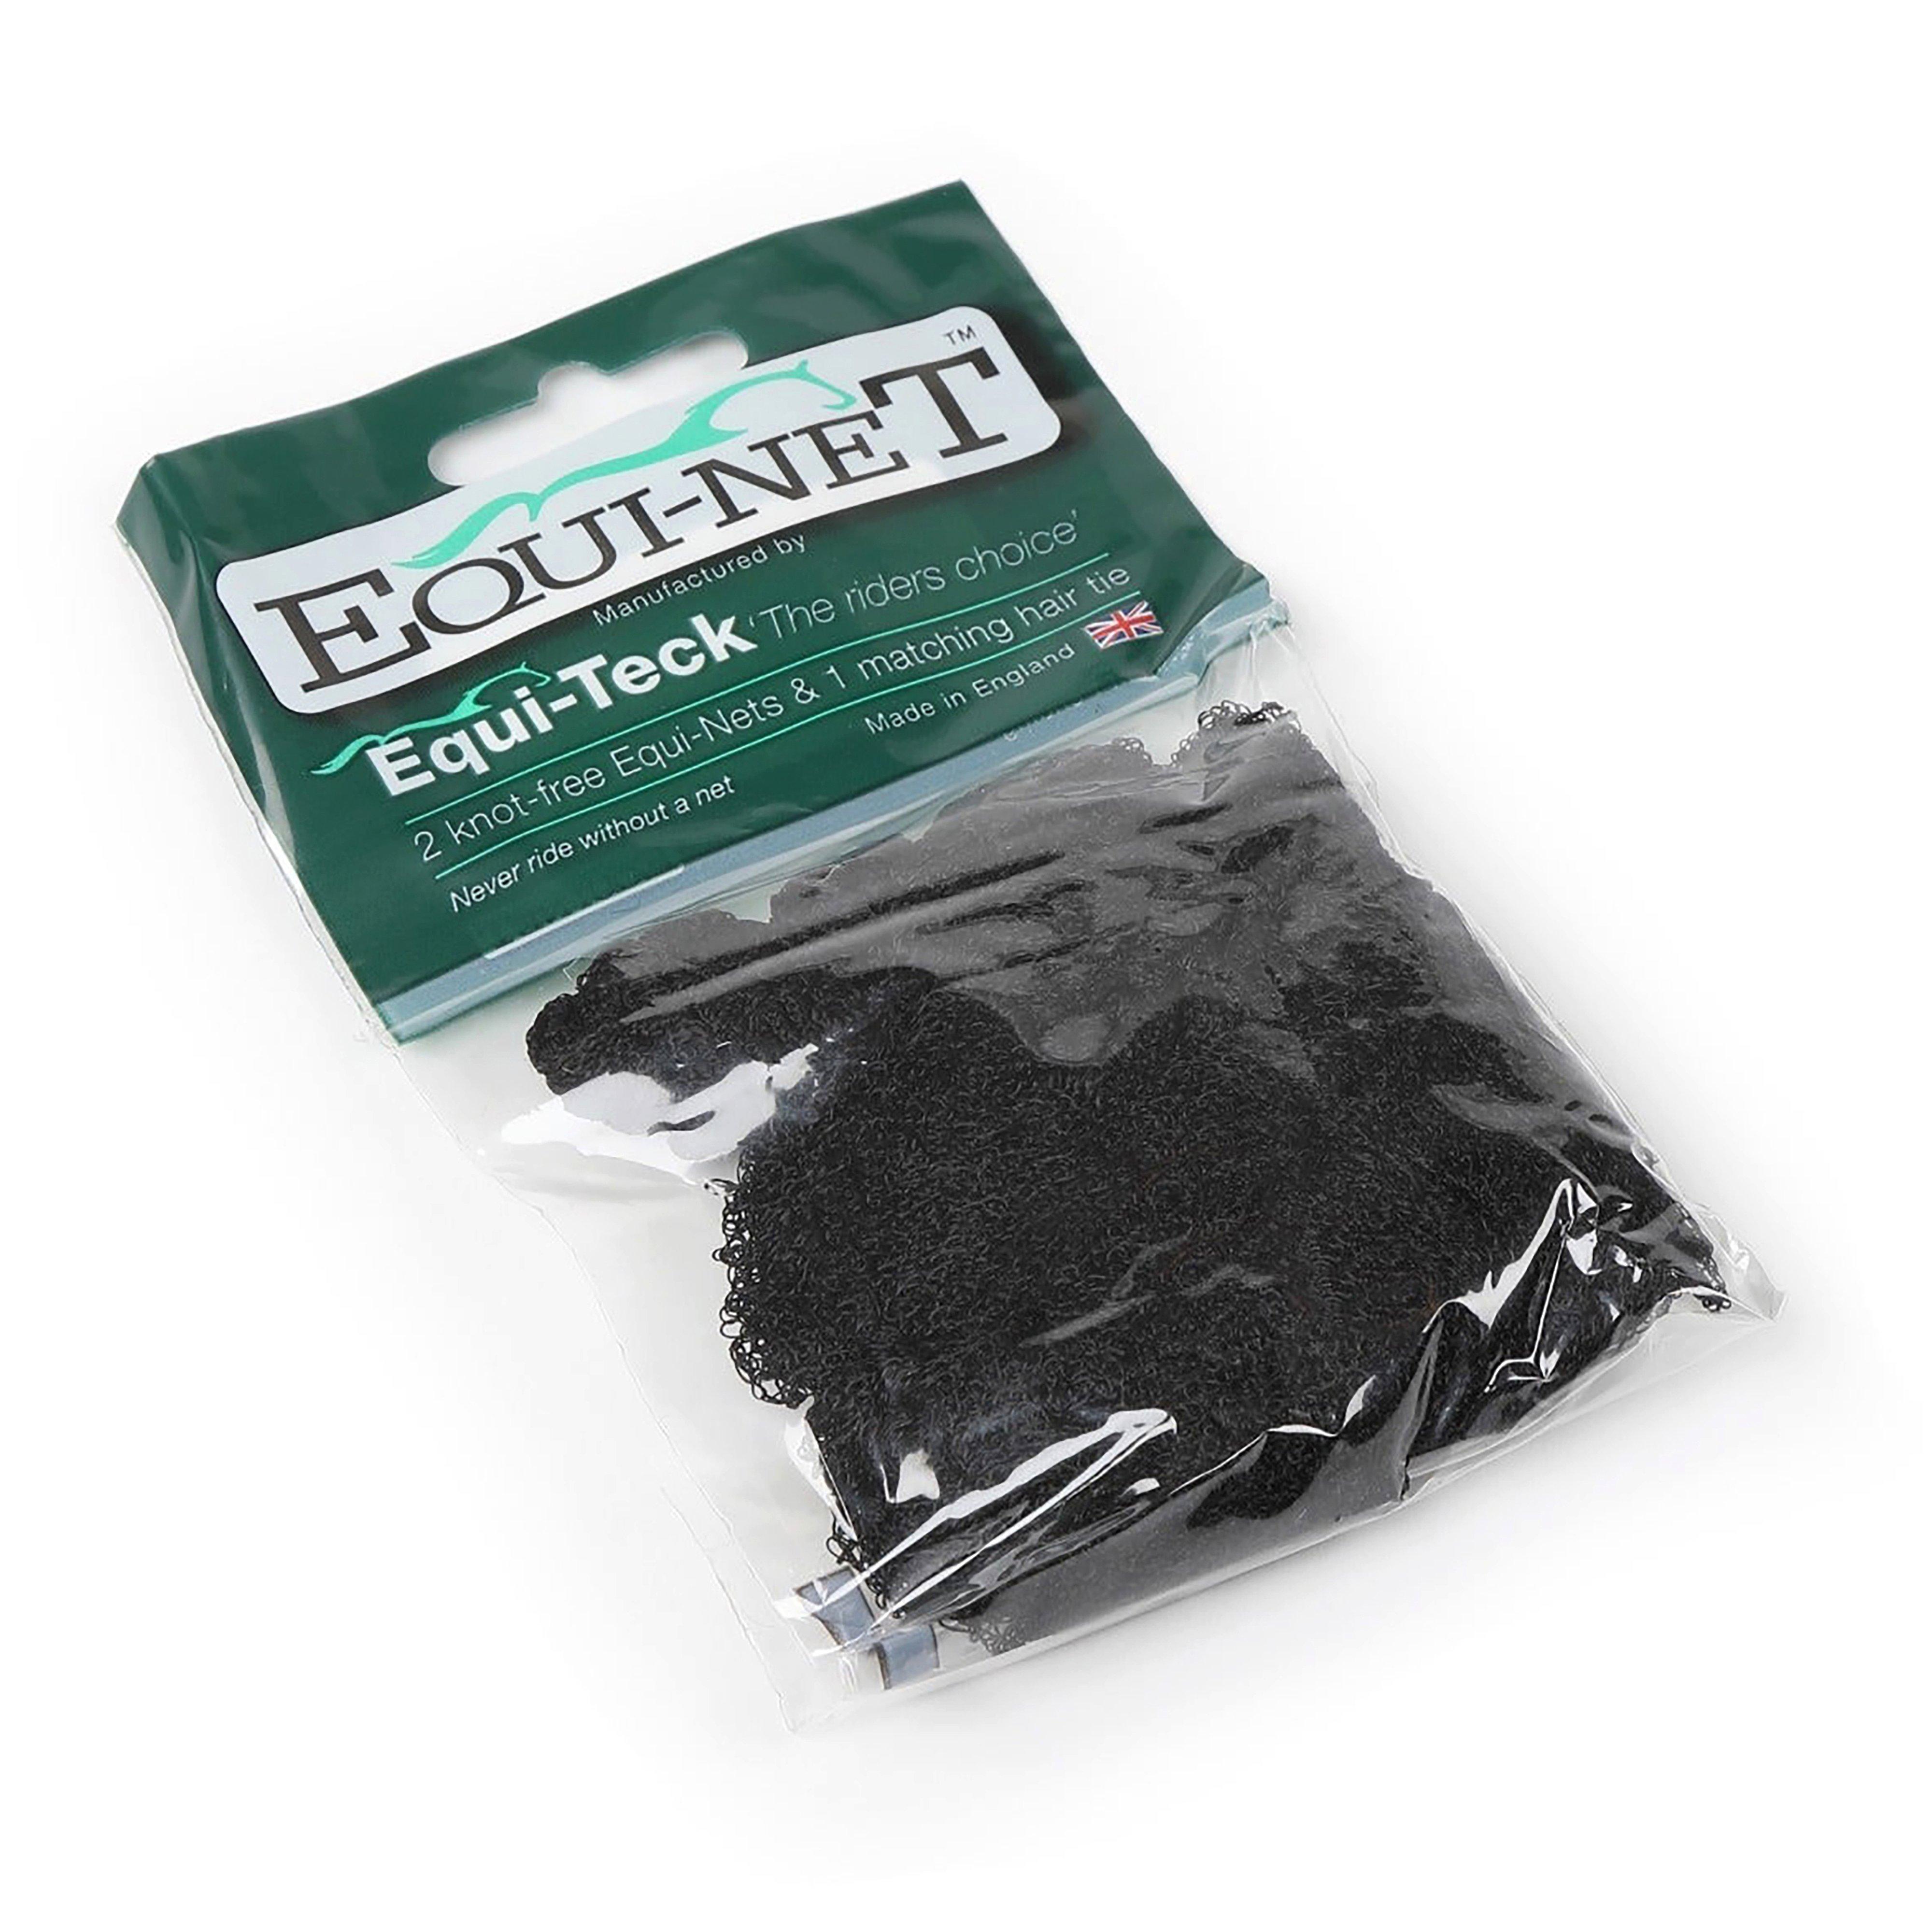 Equinet Hairnet 2PK Black